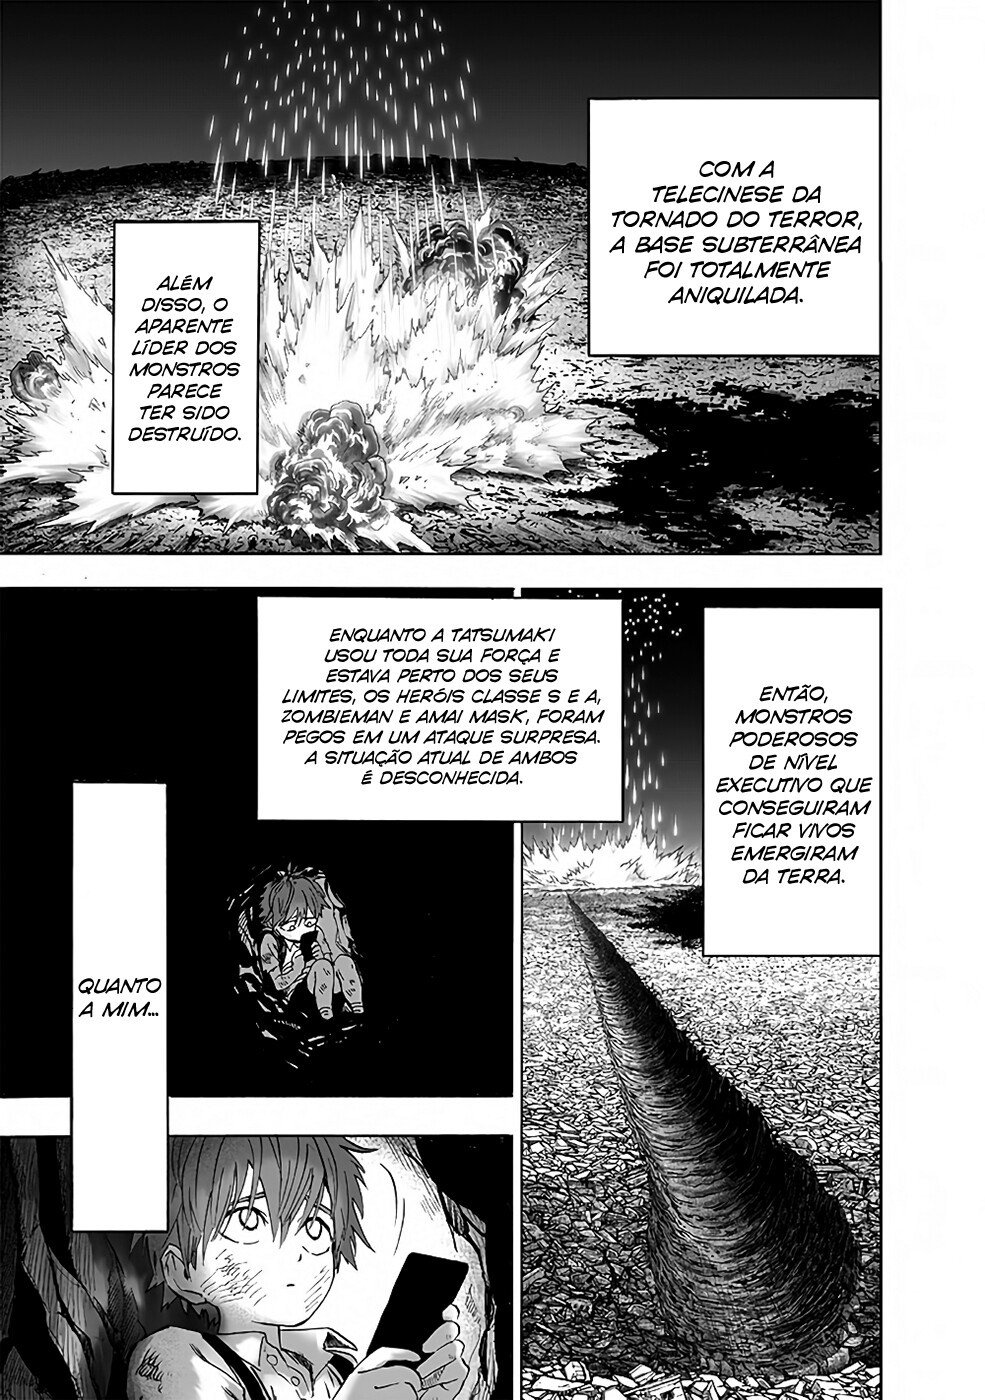 Quem no universo de Naruto seria capaz de derrotar Tatsumaki? - Página 3 2110